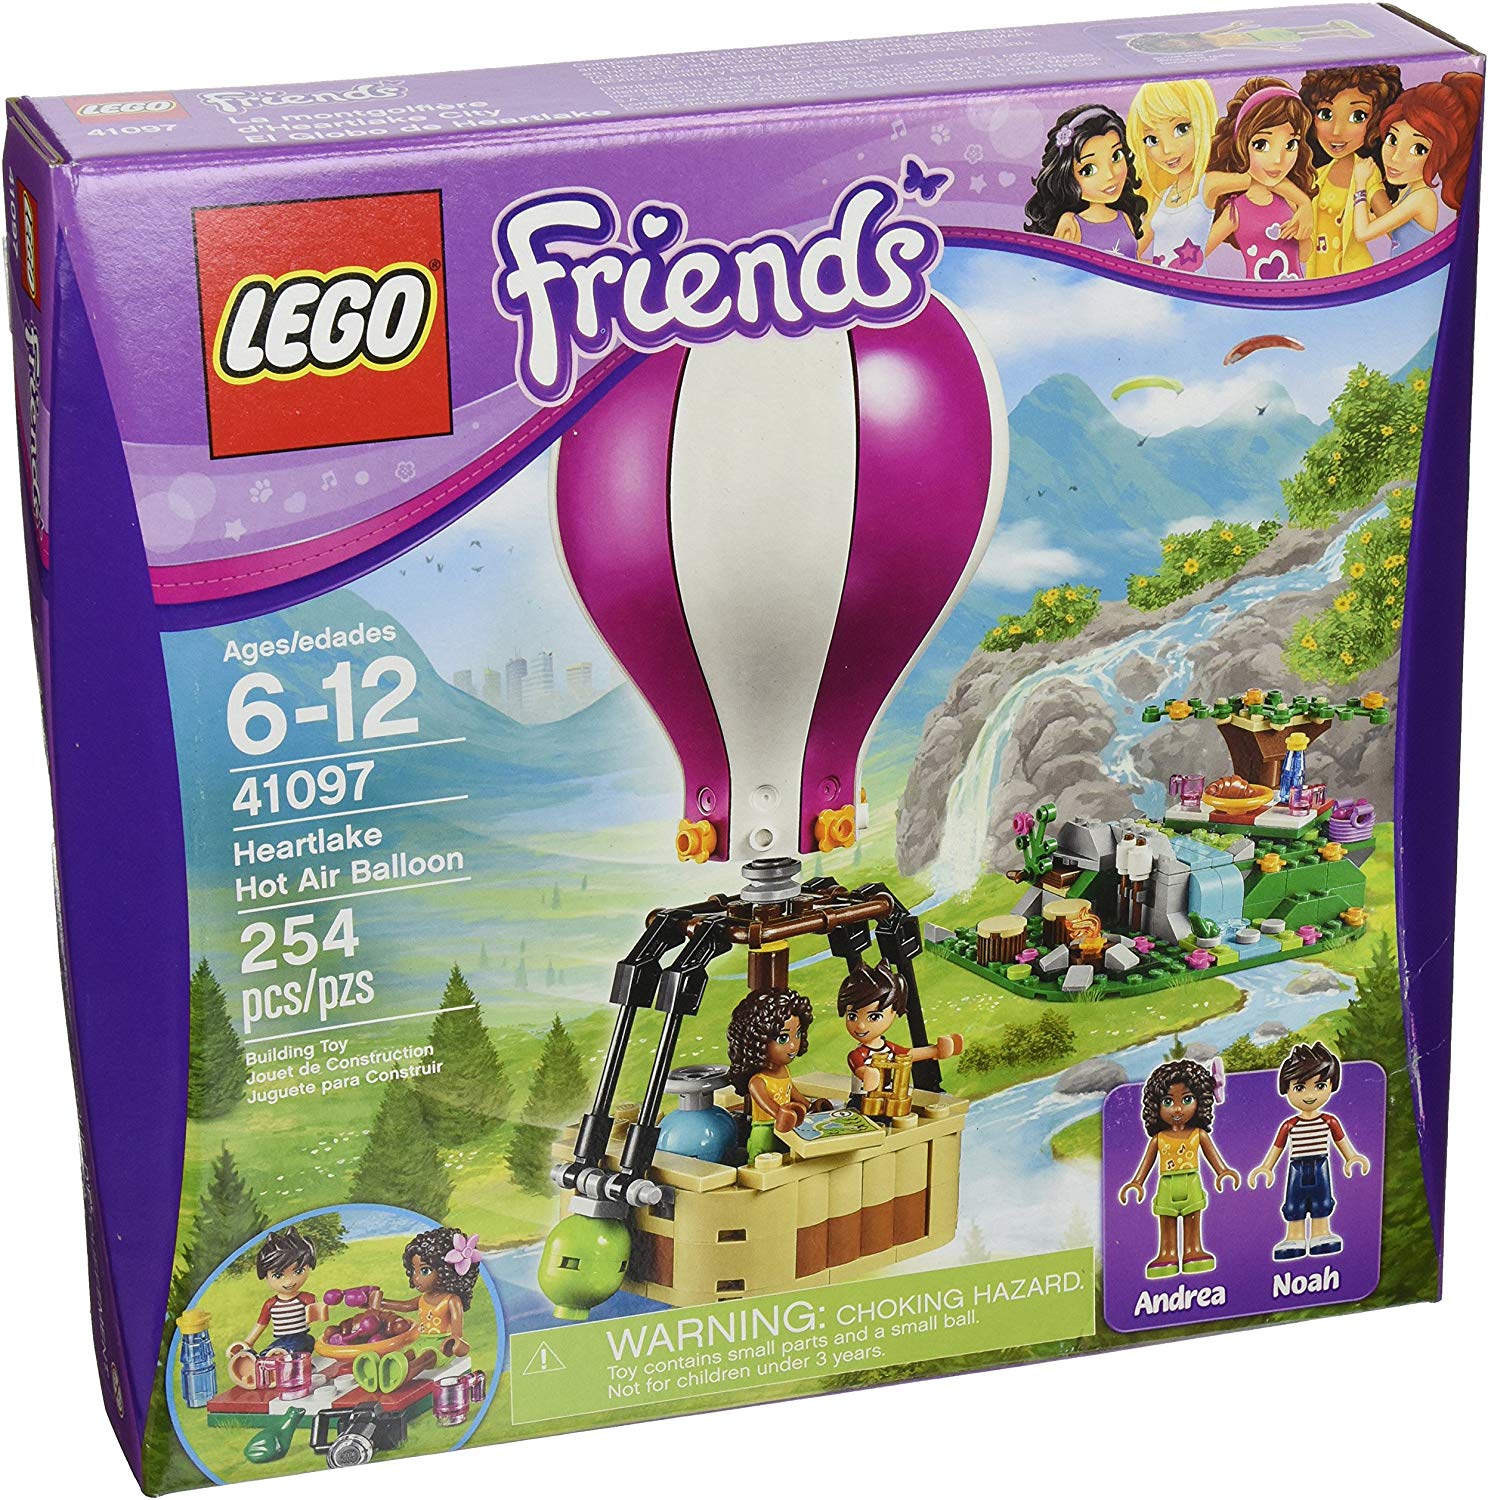 Lego Friends 41097: Heartlake Hot Air Balloon